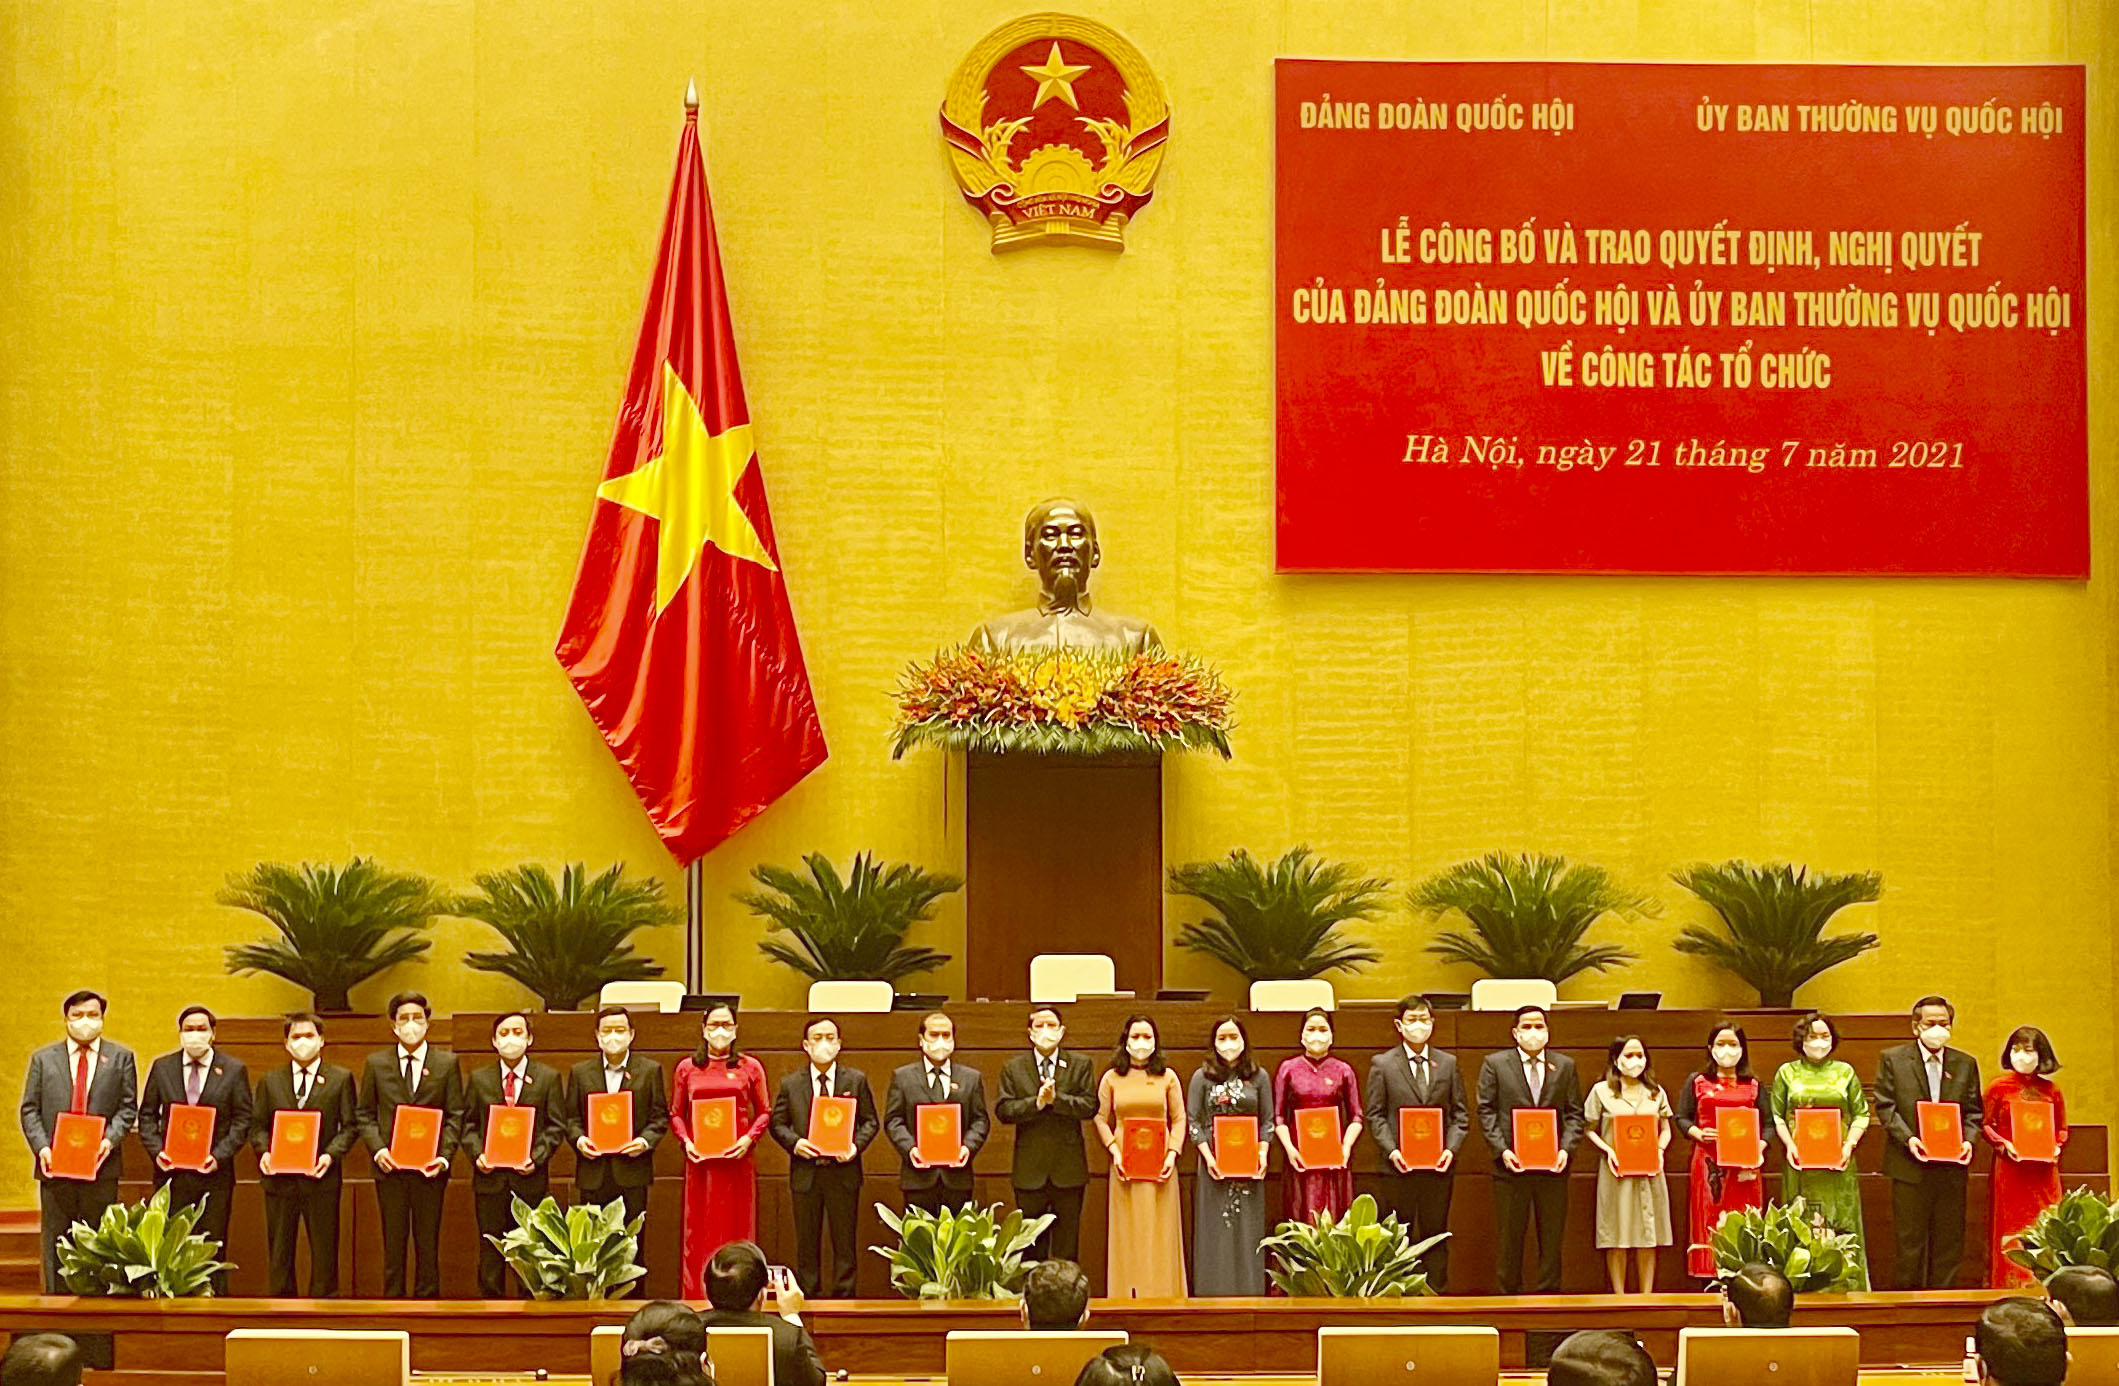 Bà Huỳnh Thị Phúc (thứ 11 từ trái qua) nhận Nghị quyết của Ủy Ban Thường vụ Quốc hội giữ chức vụ Phó Trưởng Đoàn ĐBQH tỉnh Bà Rịa - Vũng Tàu khóa XV, nhiệm kỳ 2021-2026. Ảnh: CHÂU VŨ